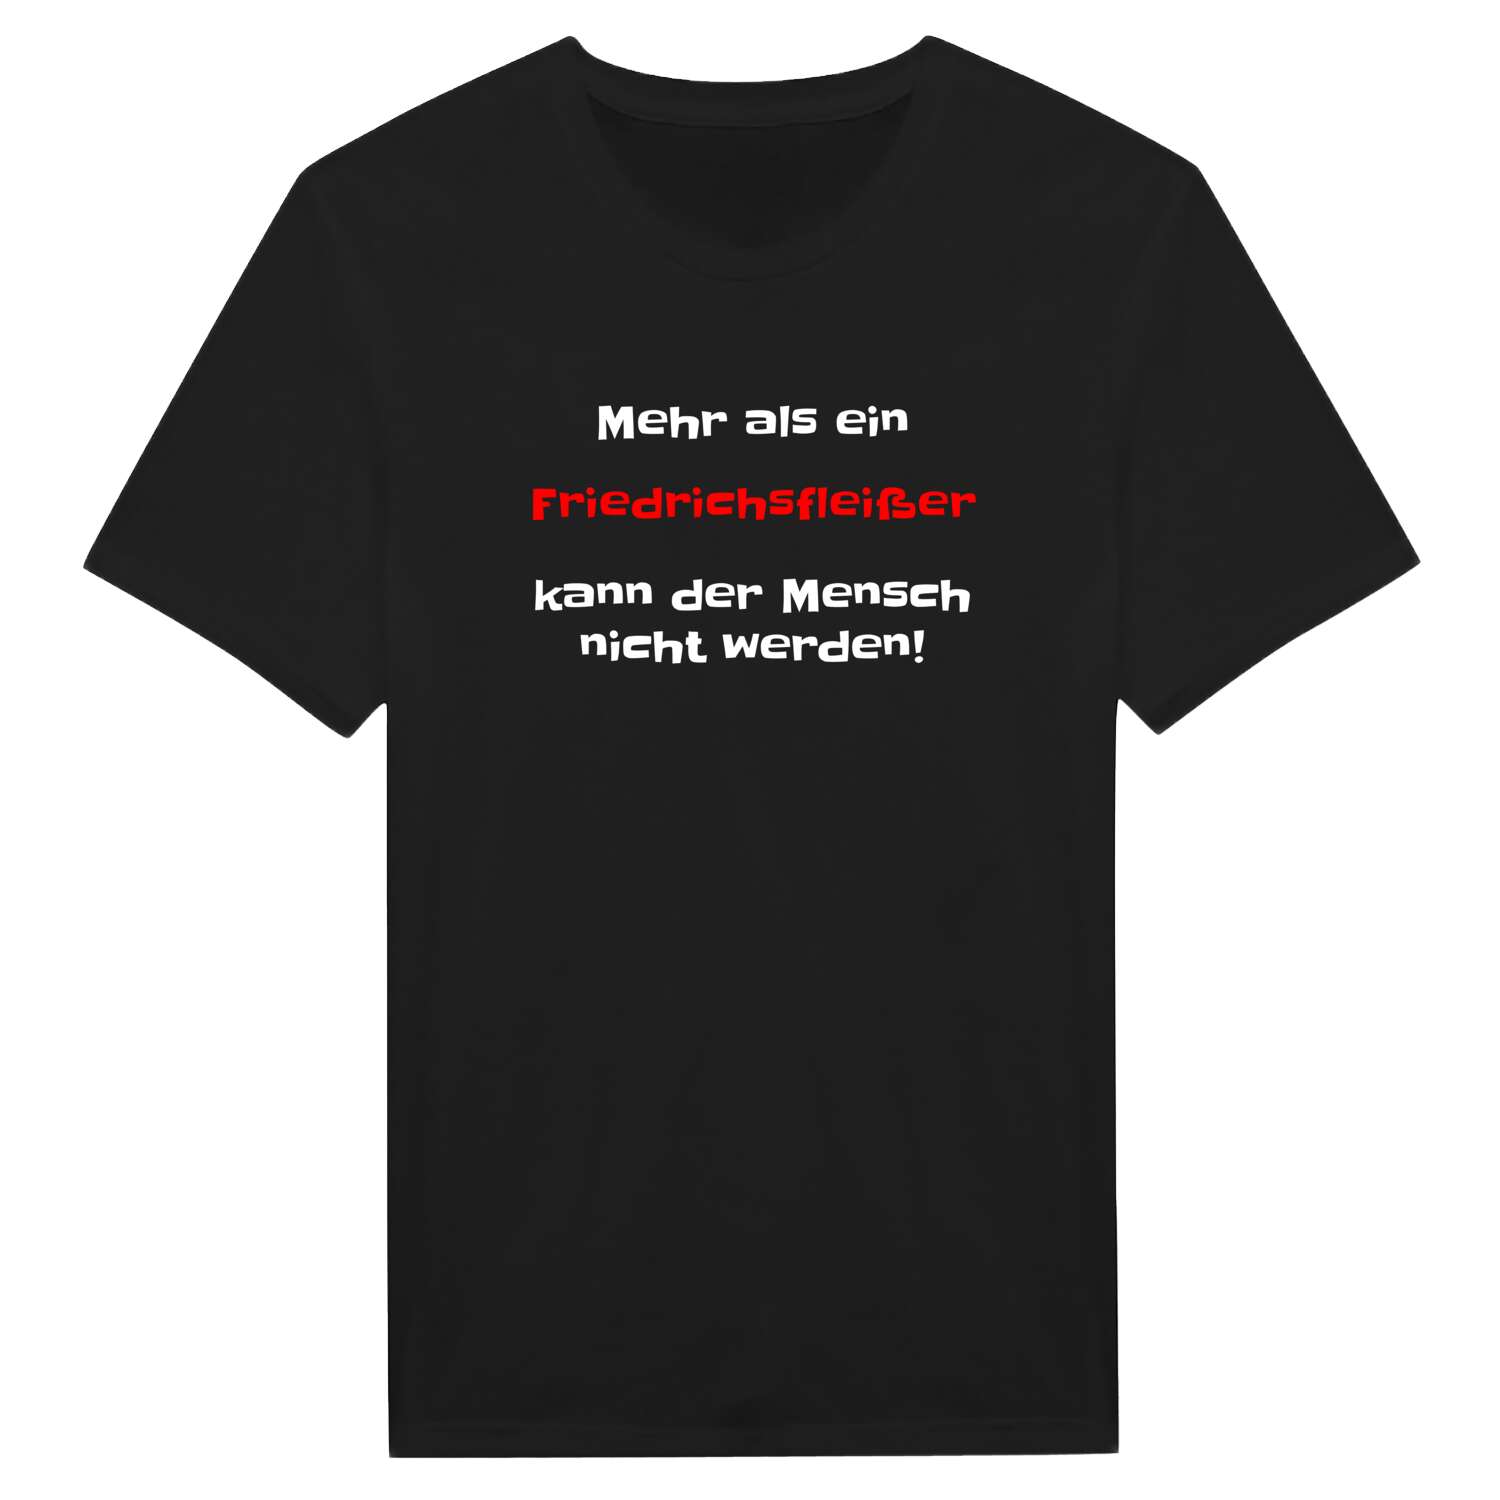 Friedrichsfleiß T-Shirt »Mehr als ein«